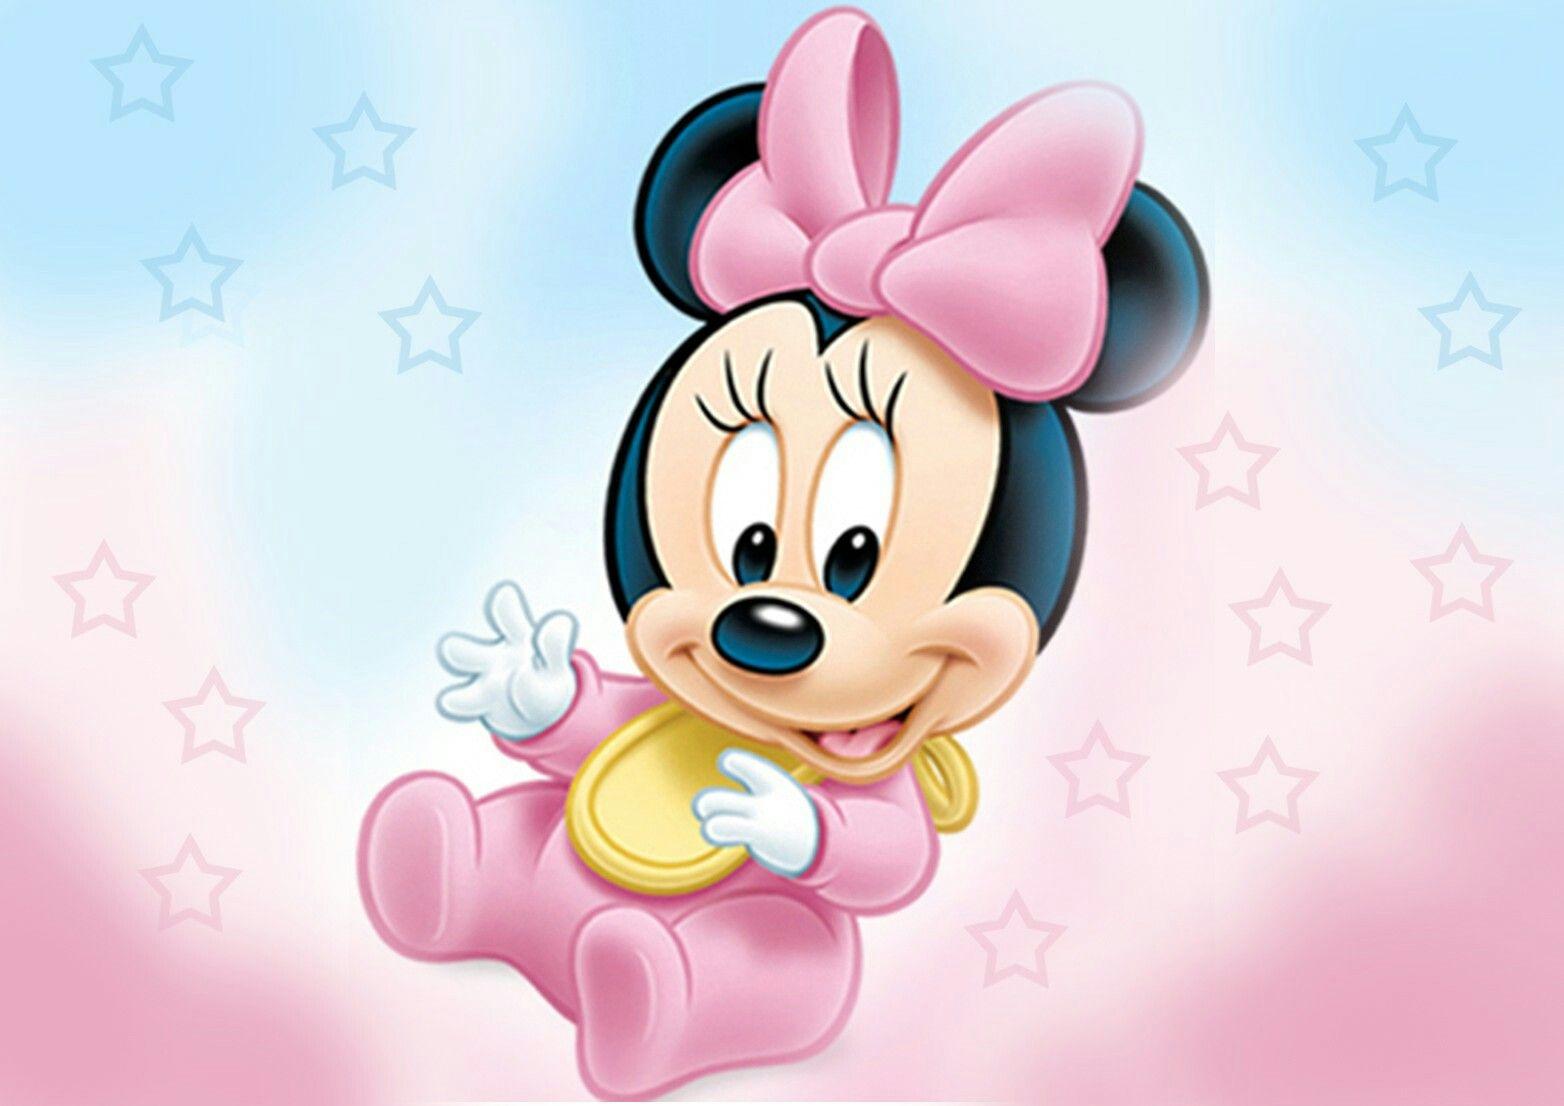 Mickey mouse. Mickey. Mickey mouse, Mice and Babies